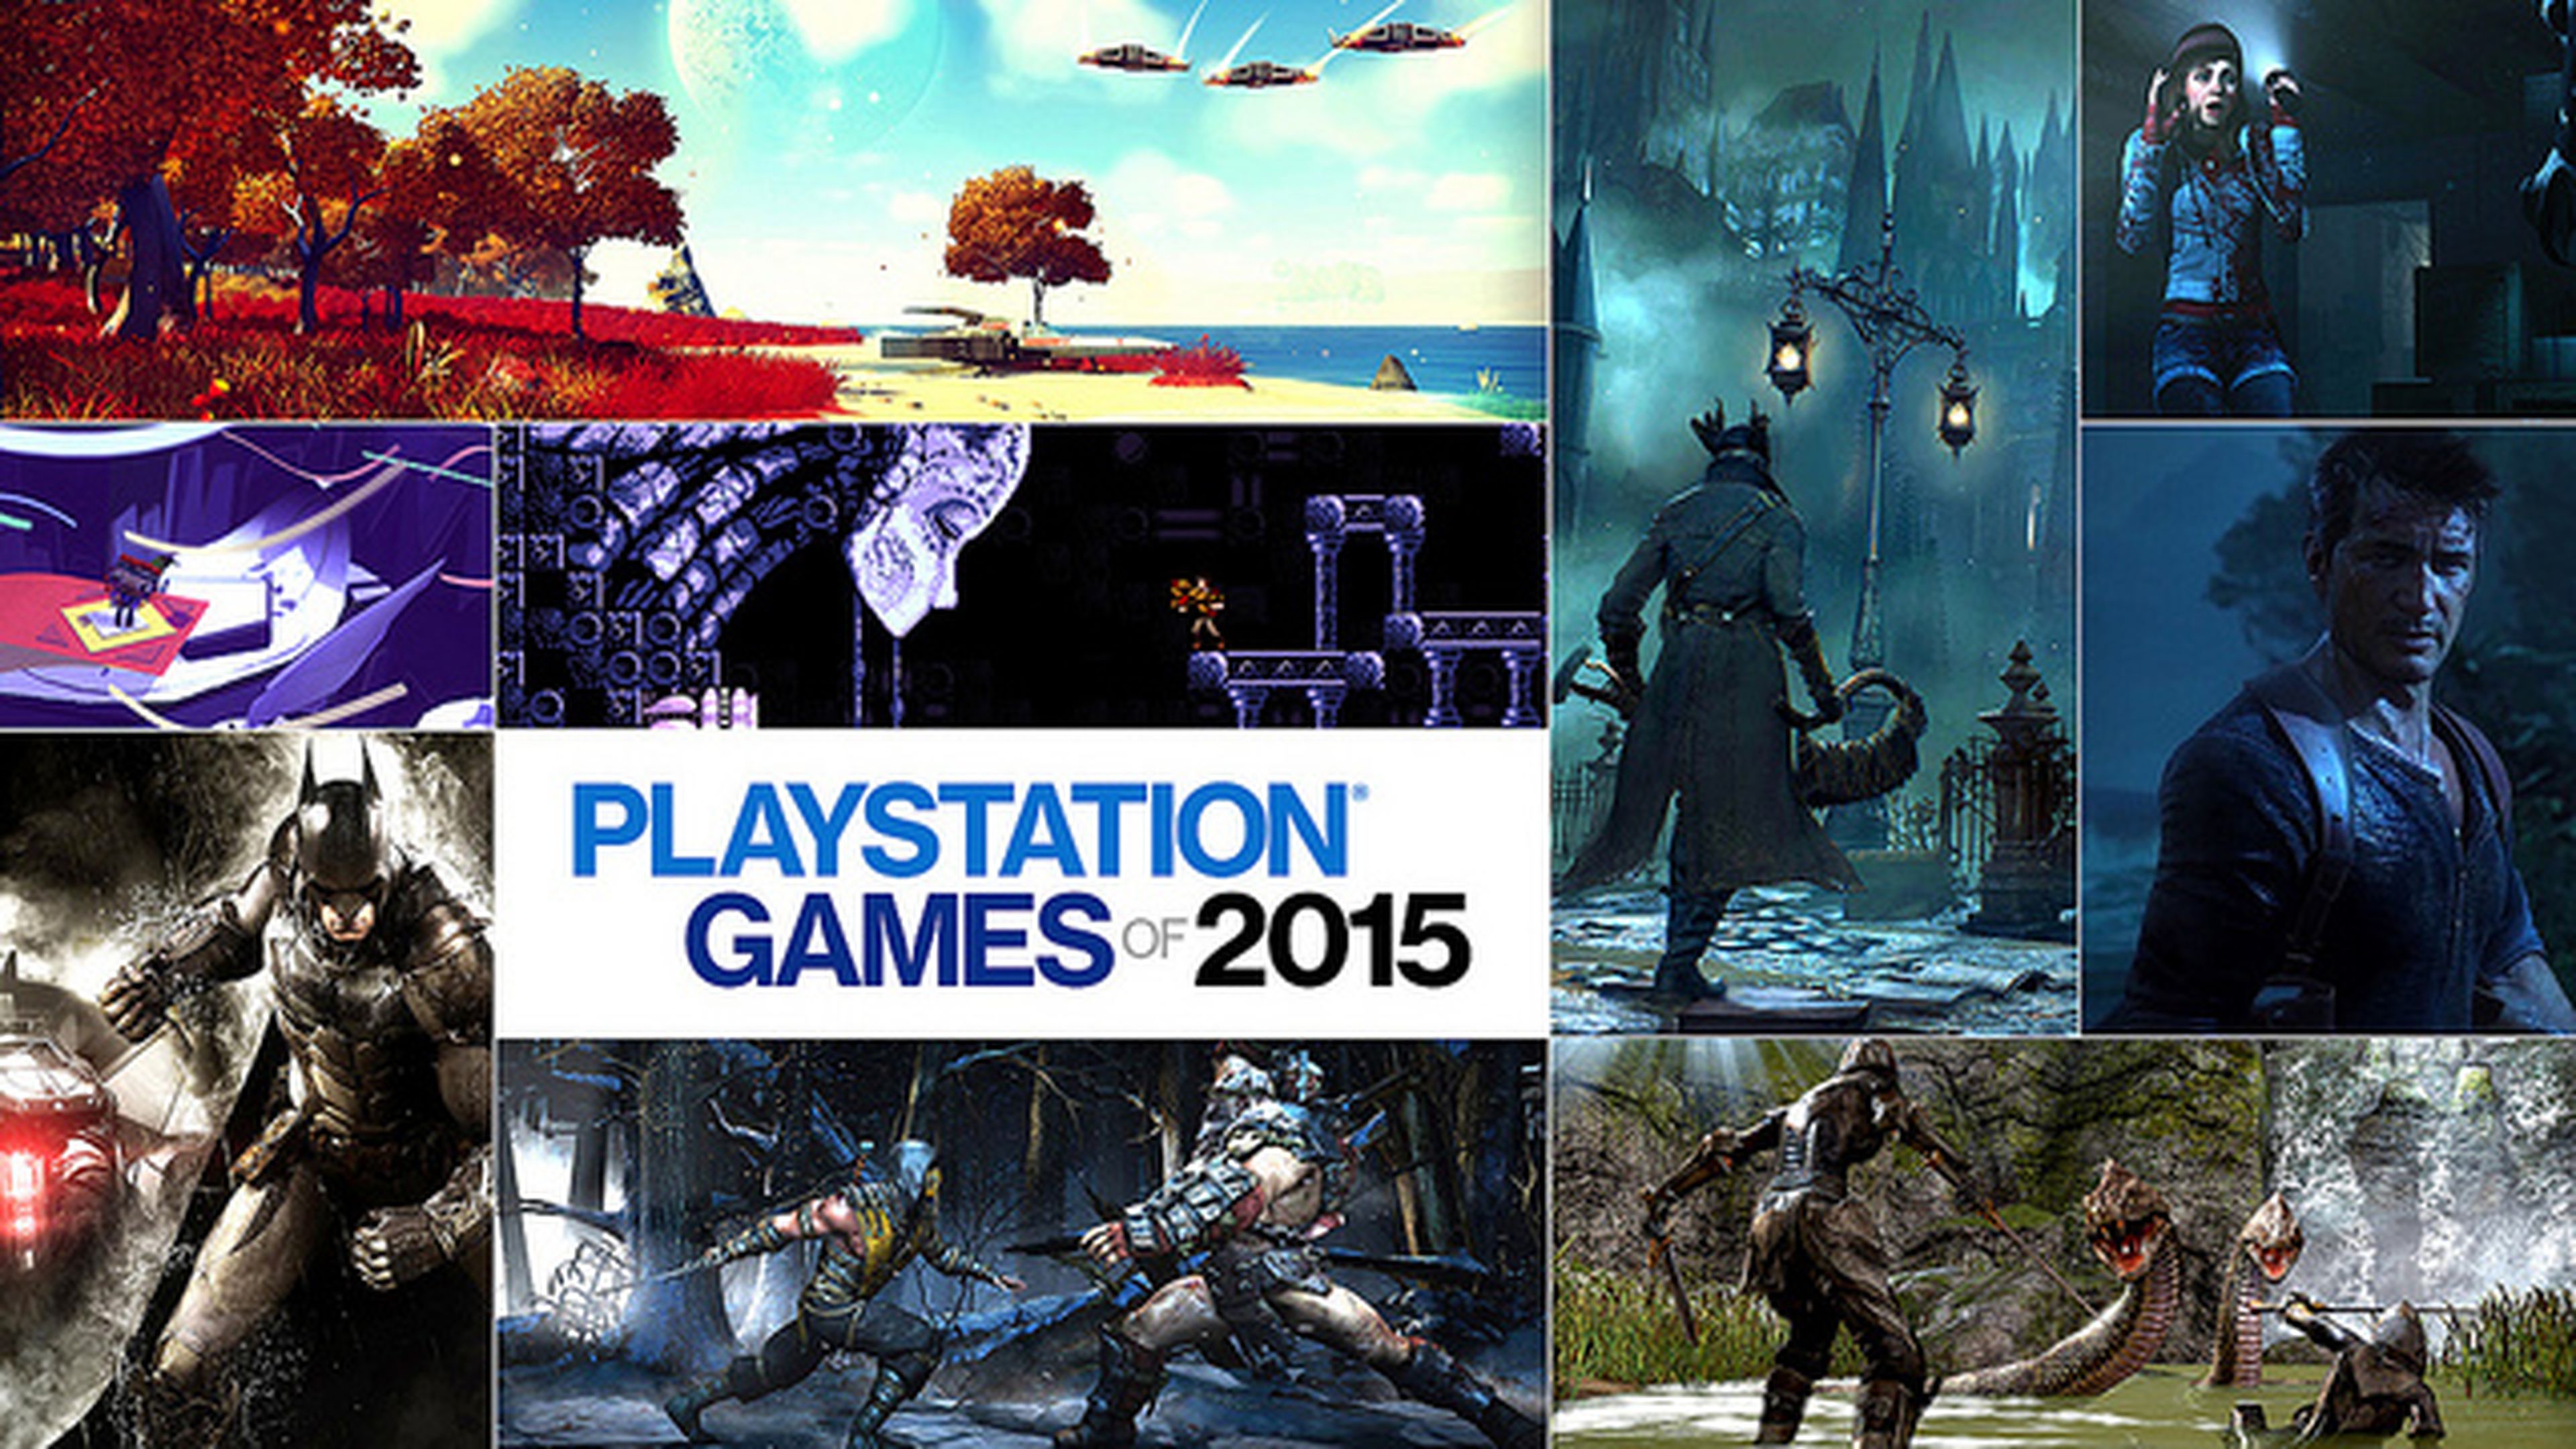 Metafor Suradam Abe Todos los juegos de PS3, PS4 y PS Vita para 2015 | Hobby Consolas